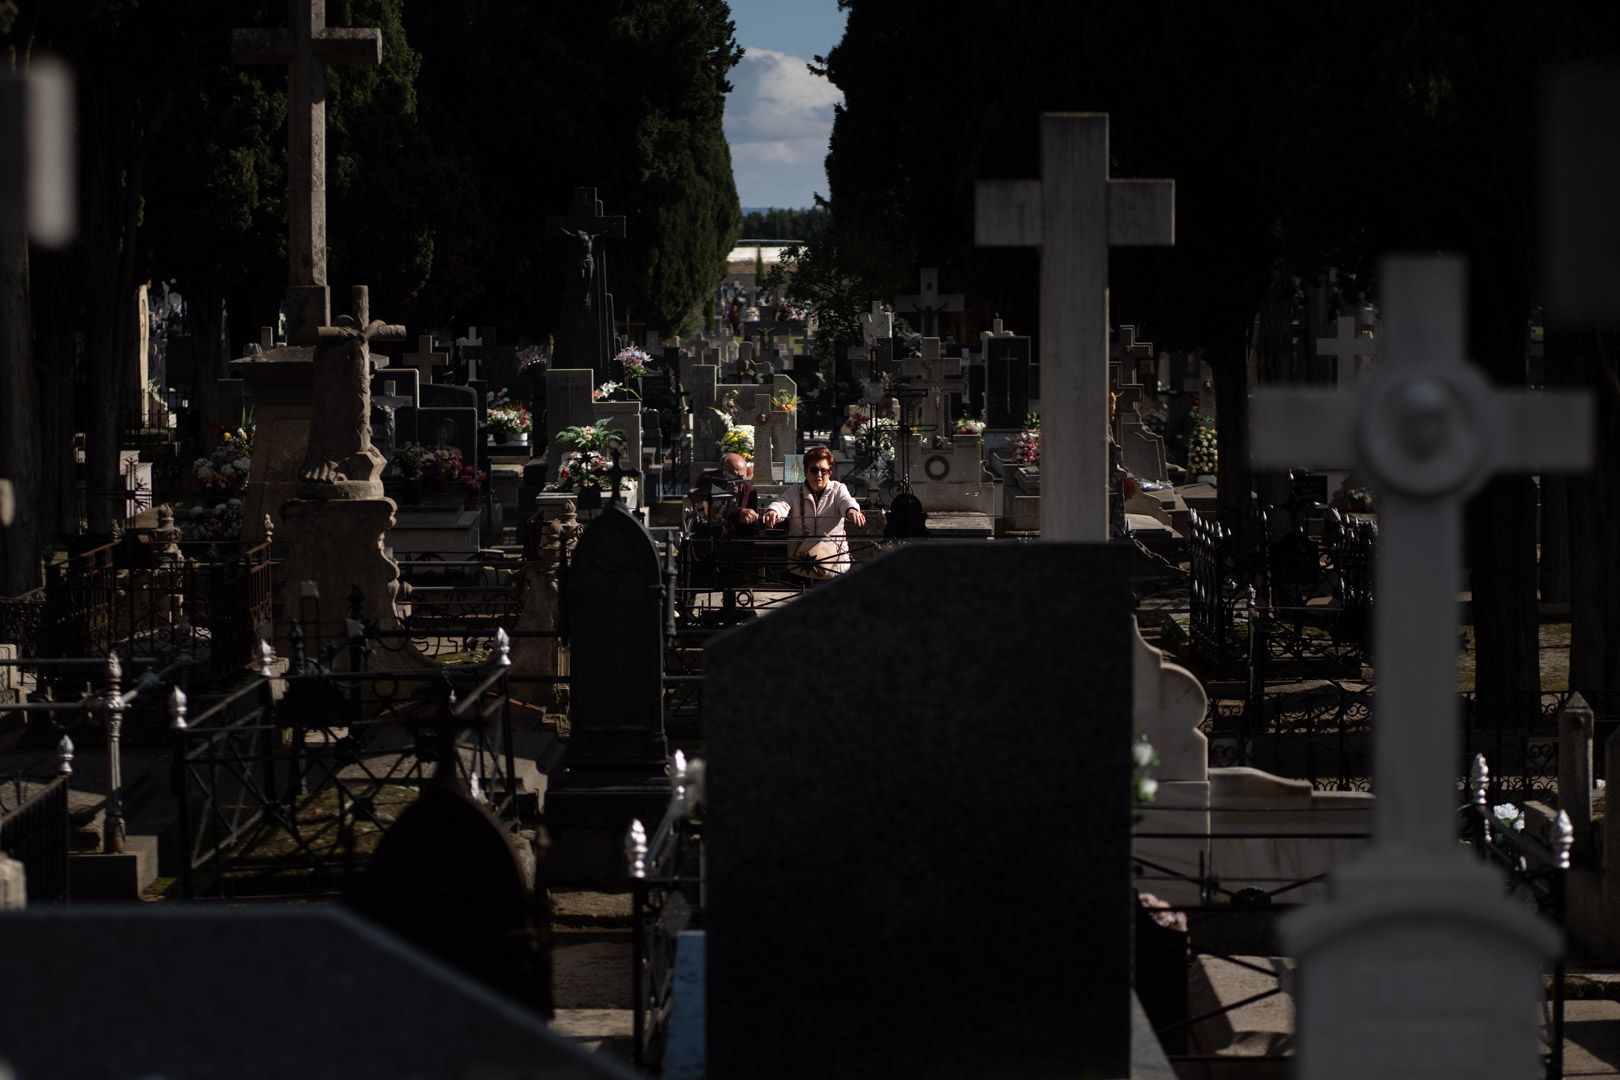 GALERÍA | La imágenes del Día de Todos los Santos en el cementerio de Zamora